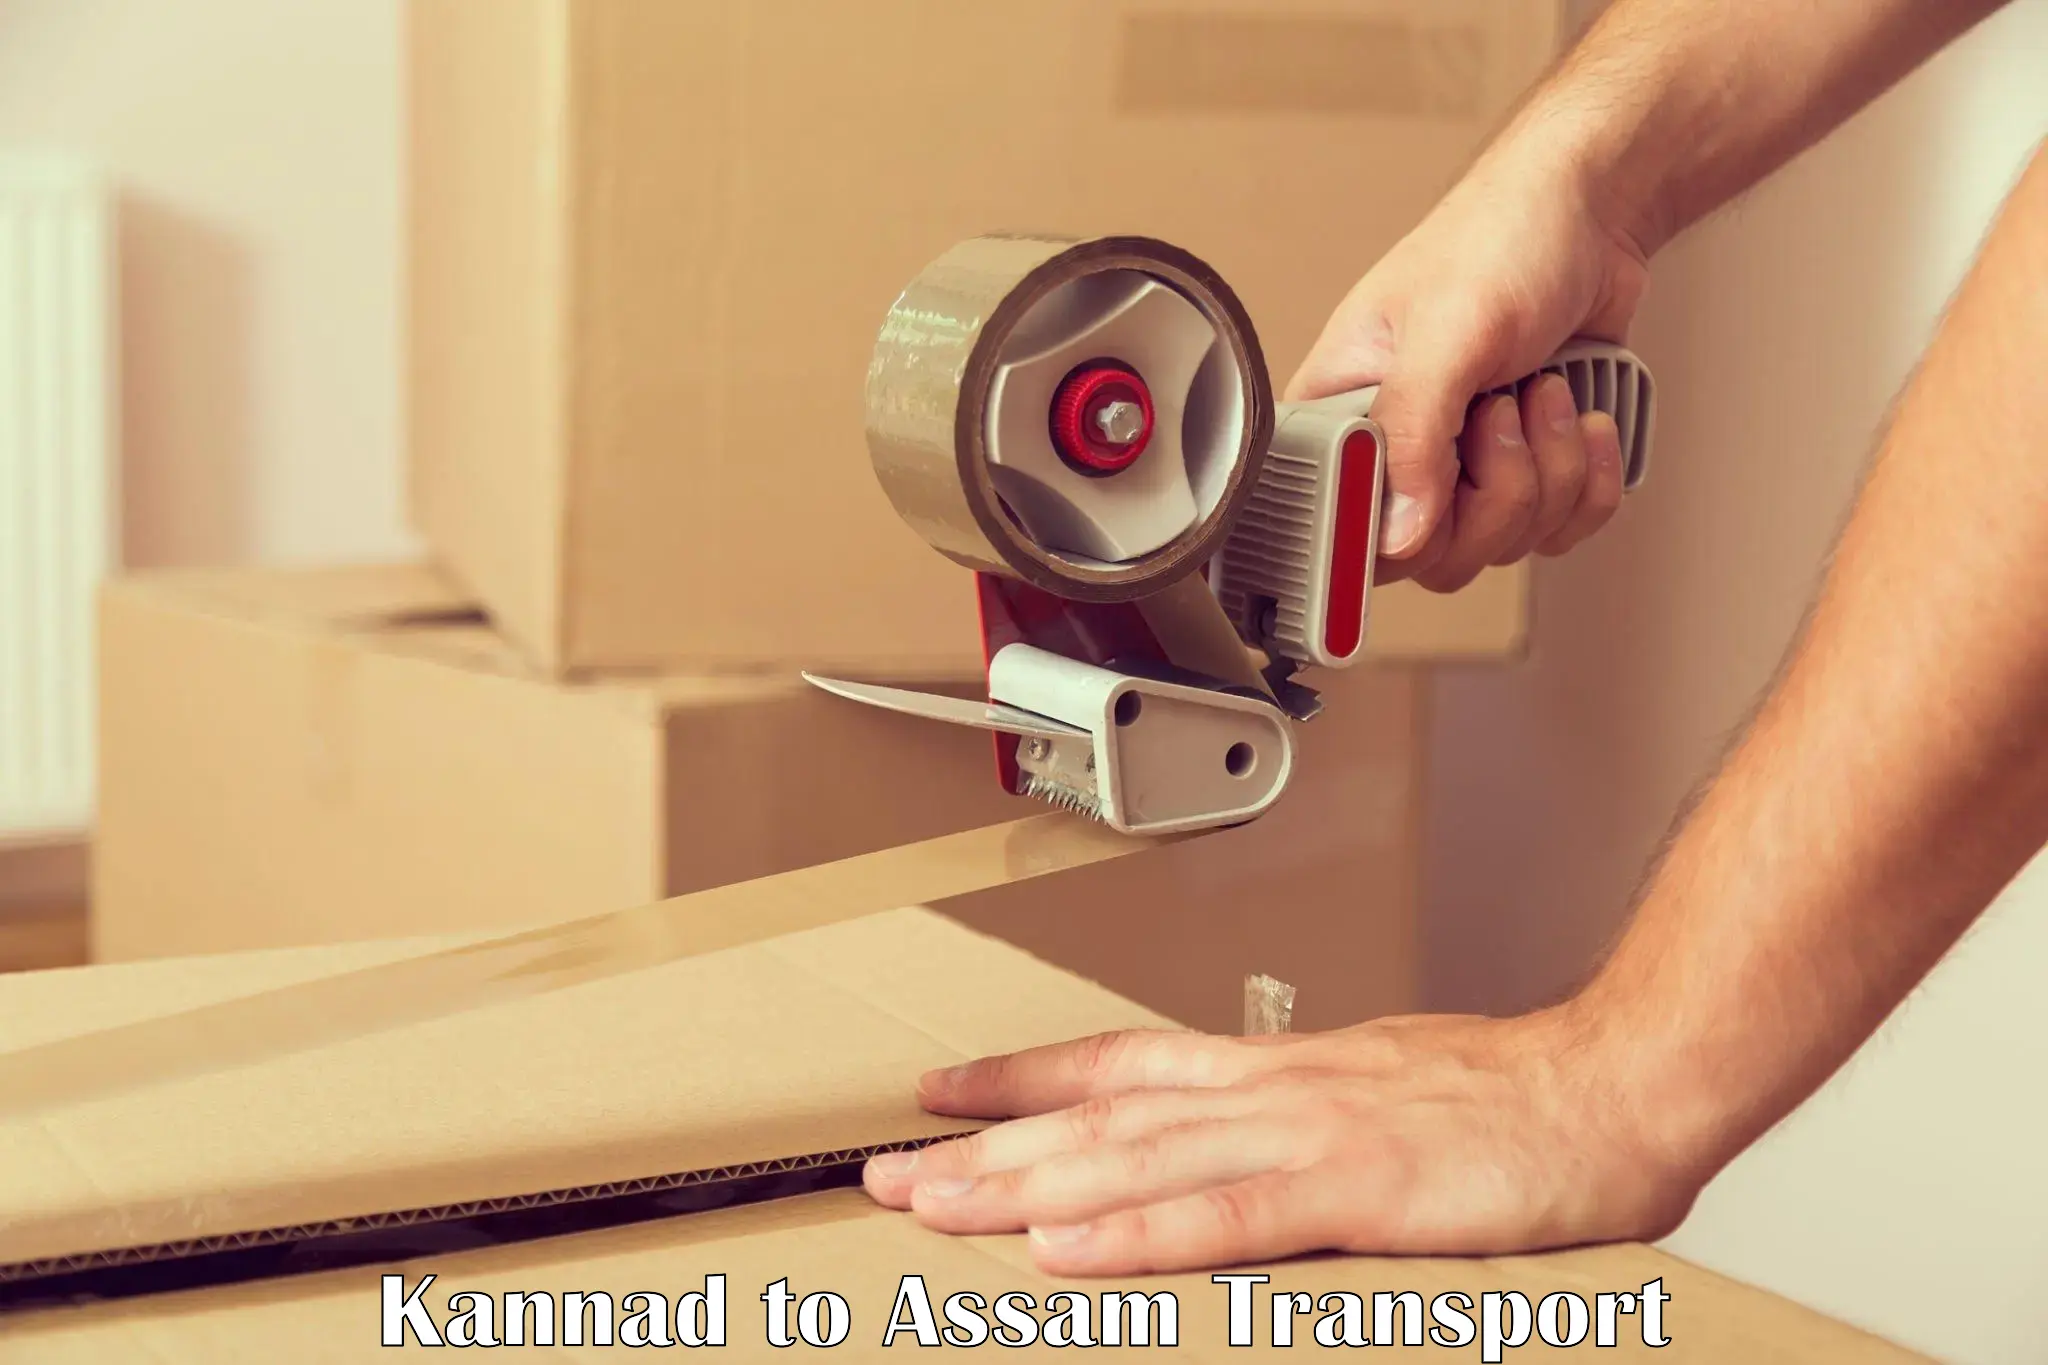 Transport in sharing Kannad to Assam